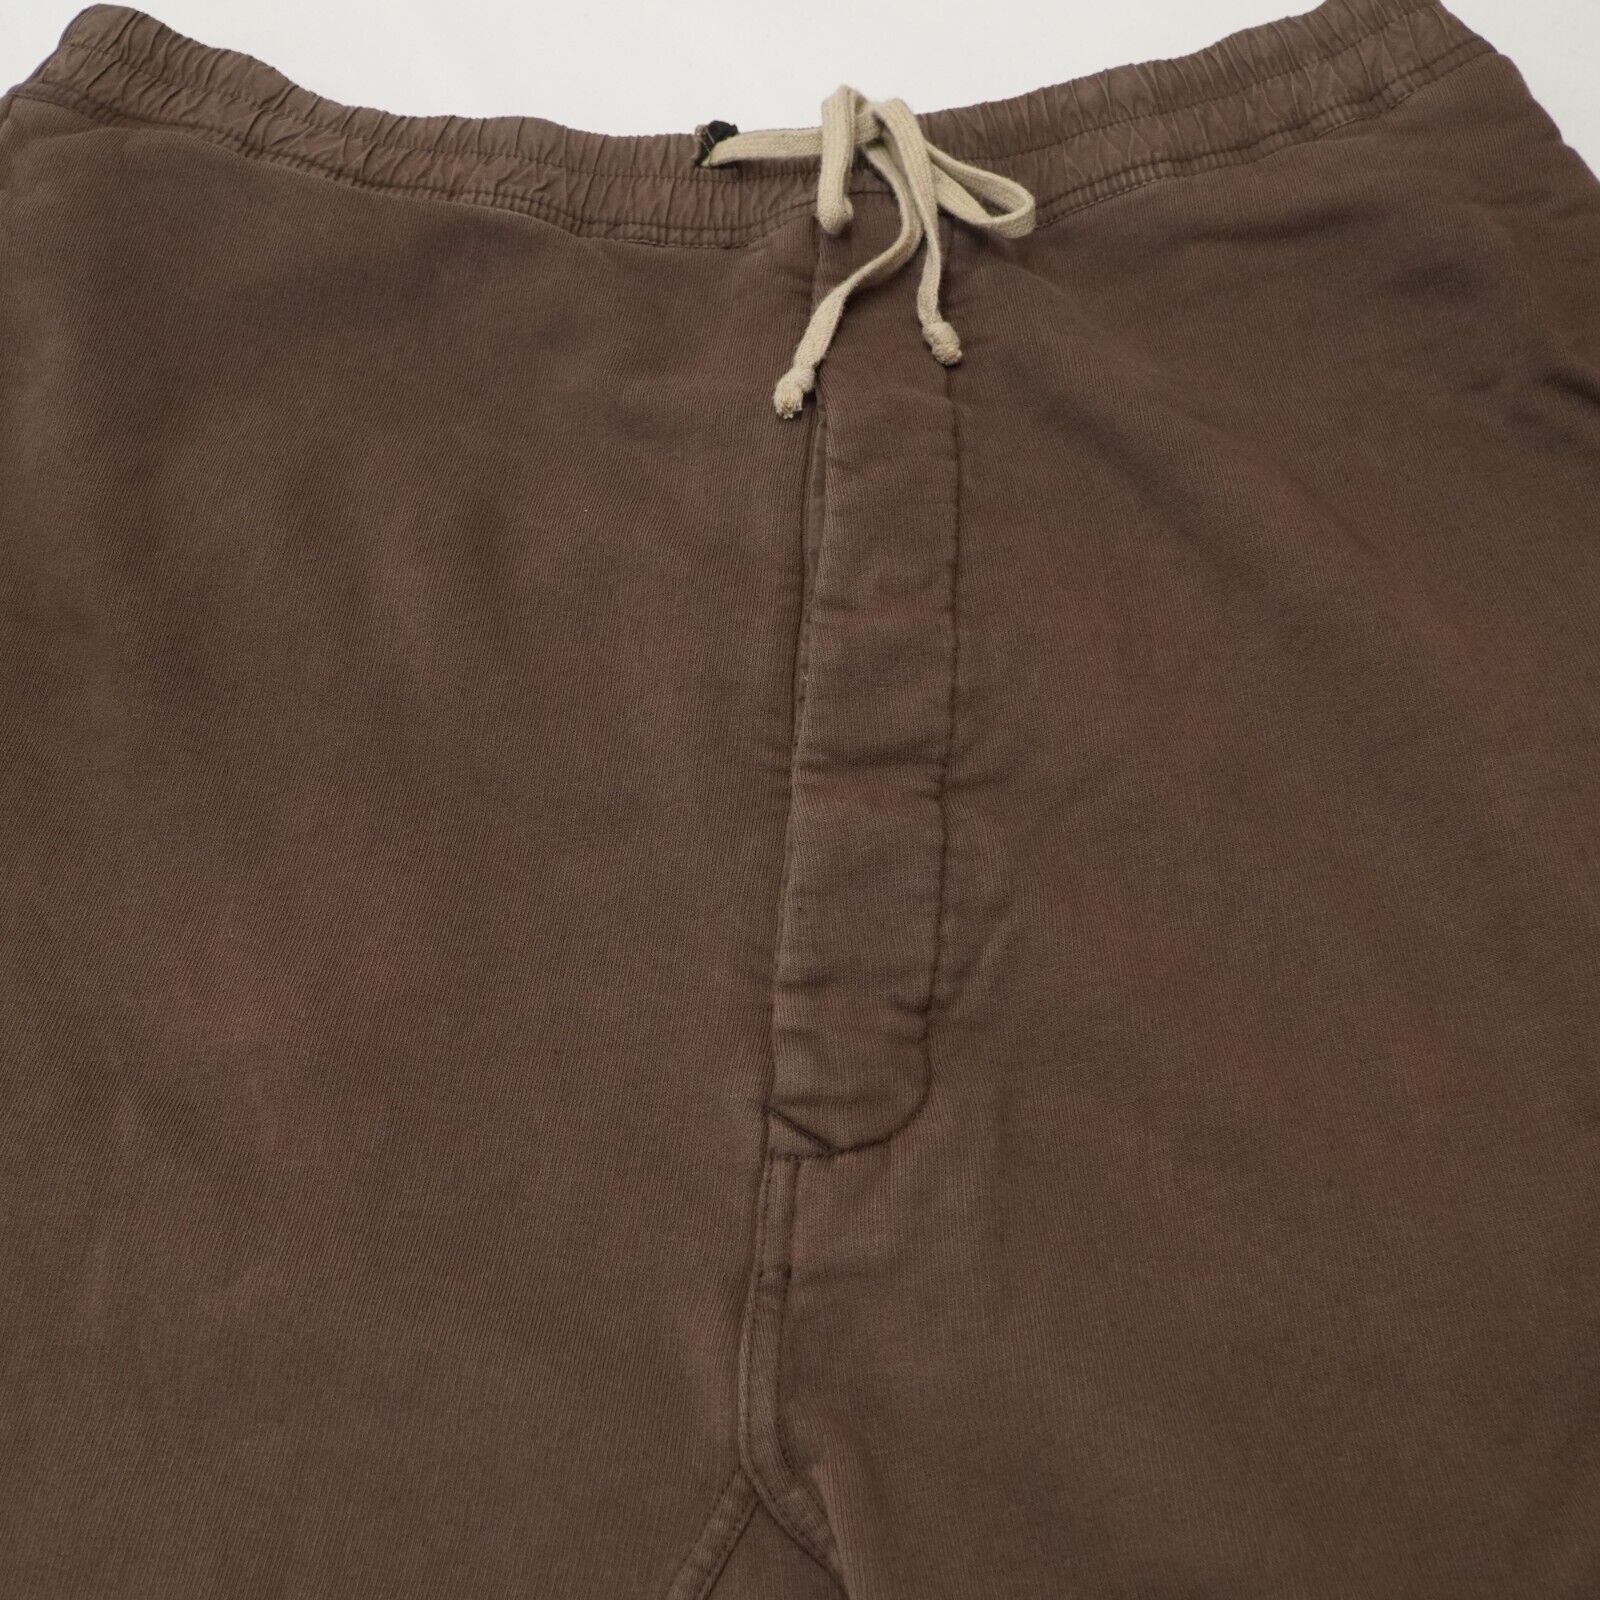 Rick Shorts Drop Crotch Cotton Macassar Brown Large - 7